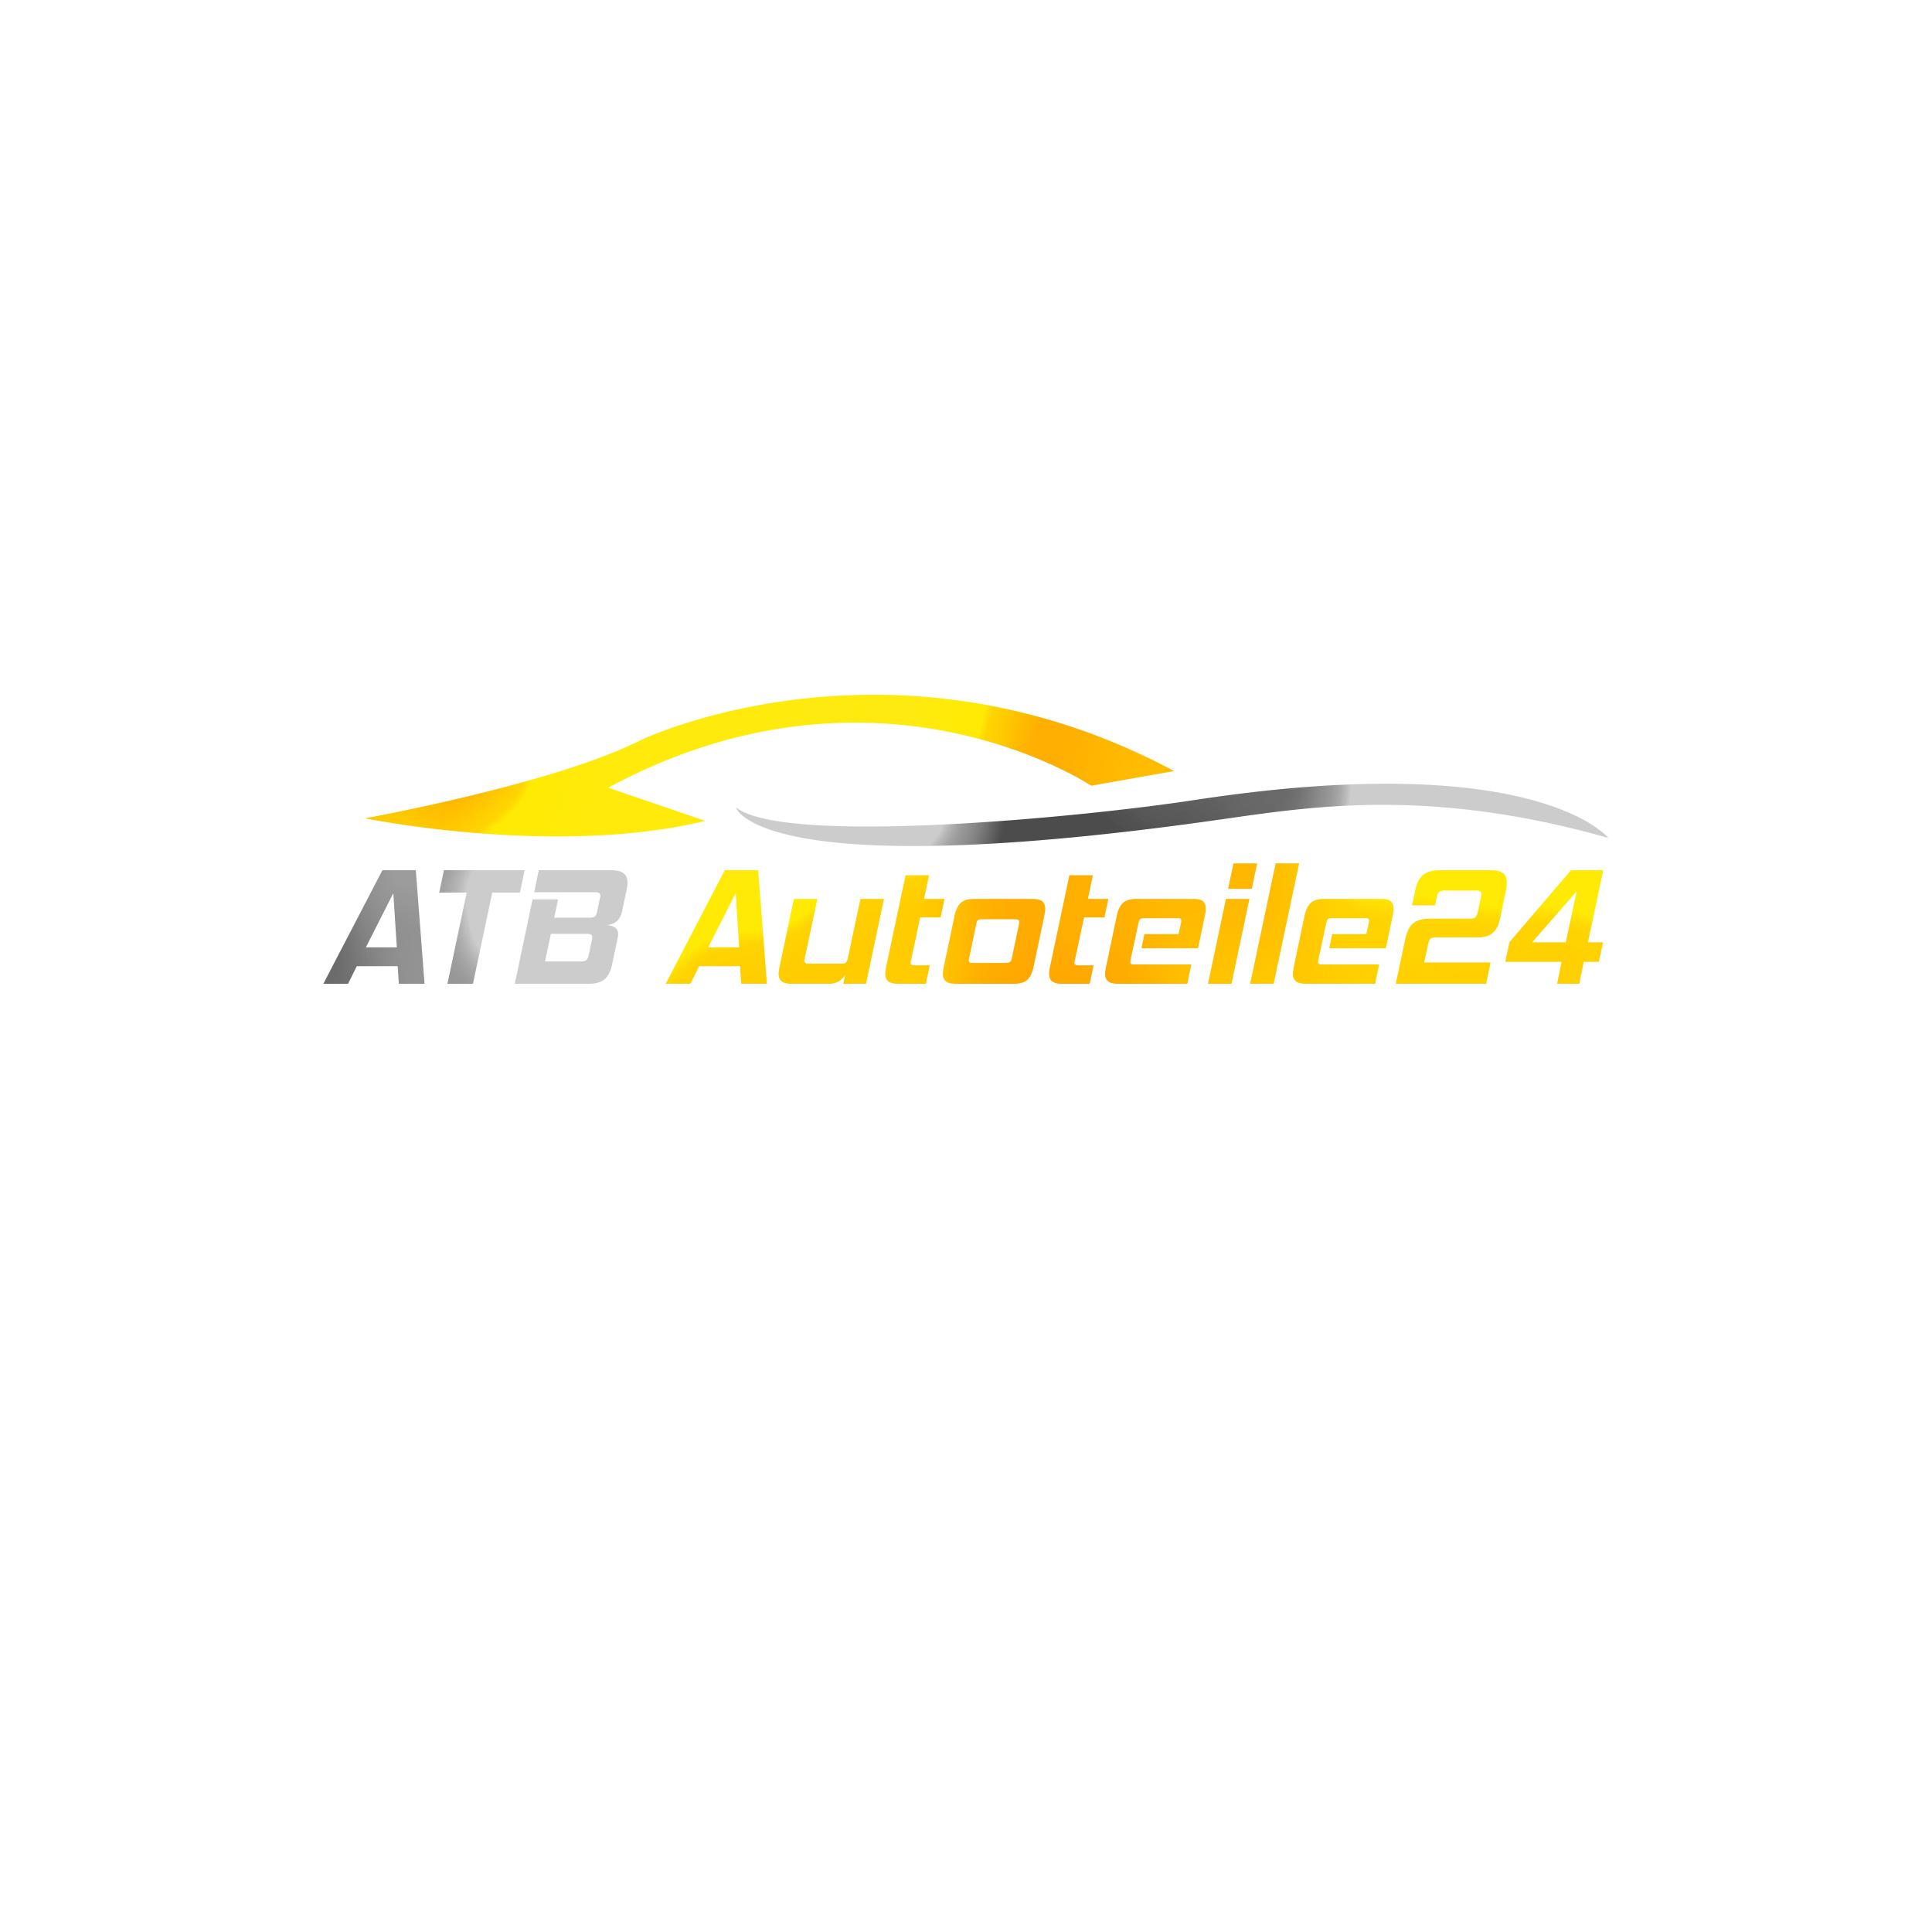 Logo ATB Autoteile24